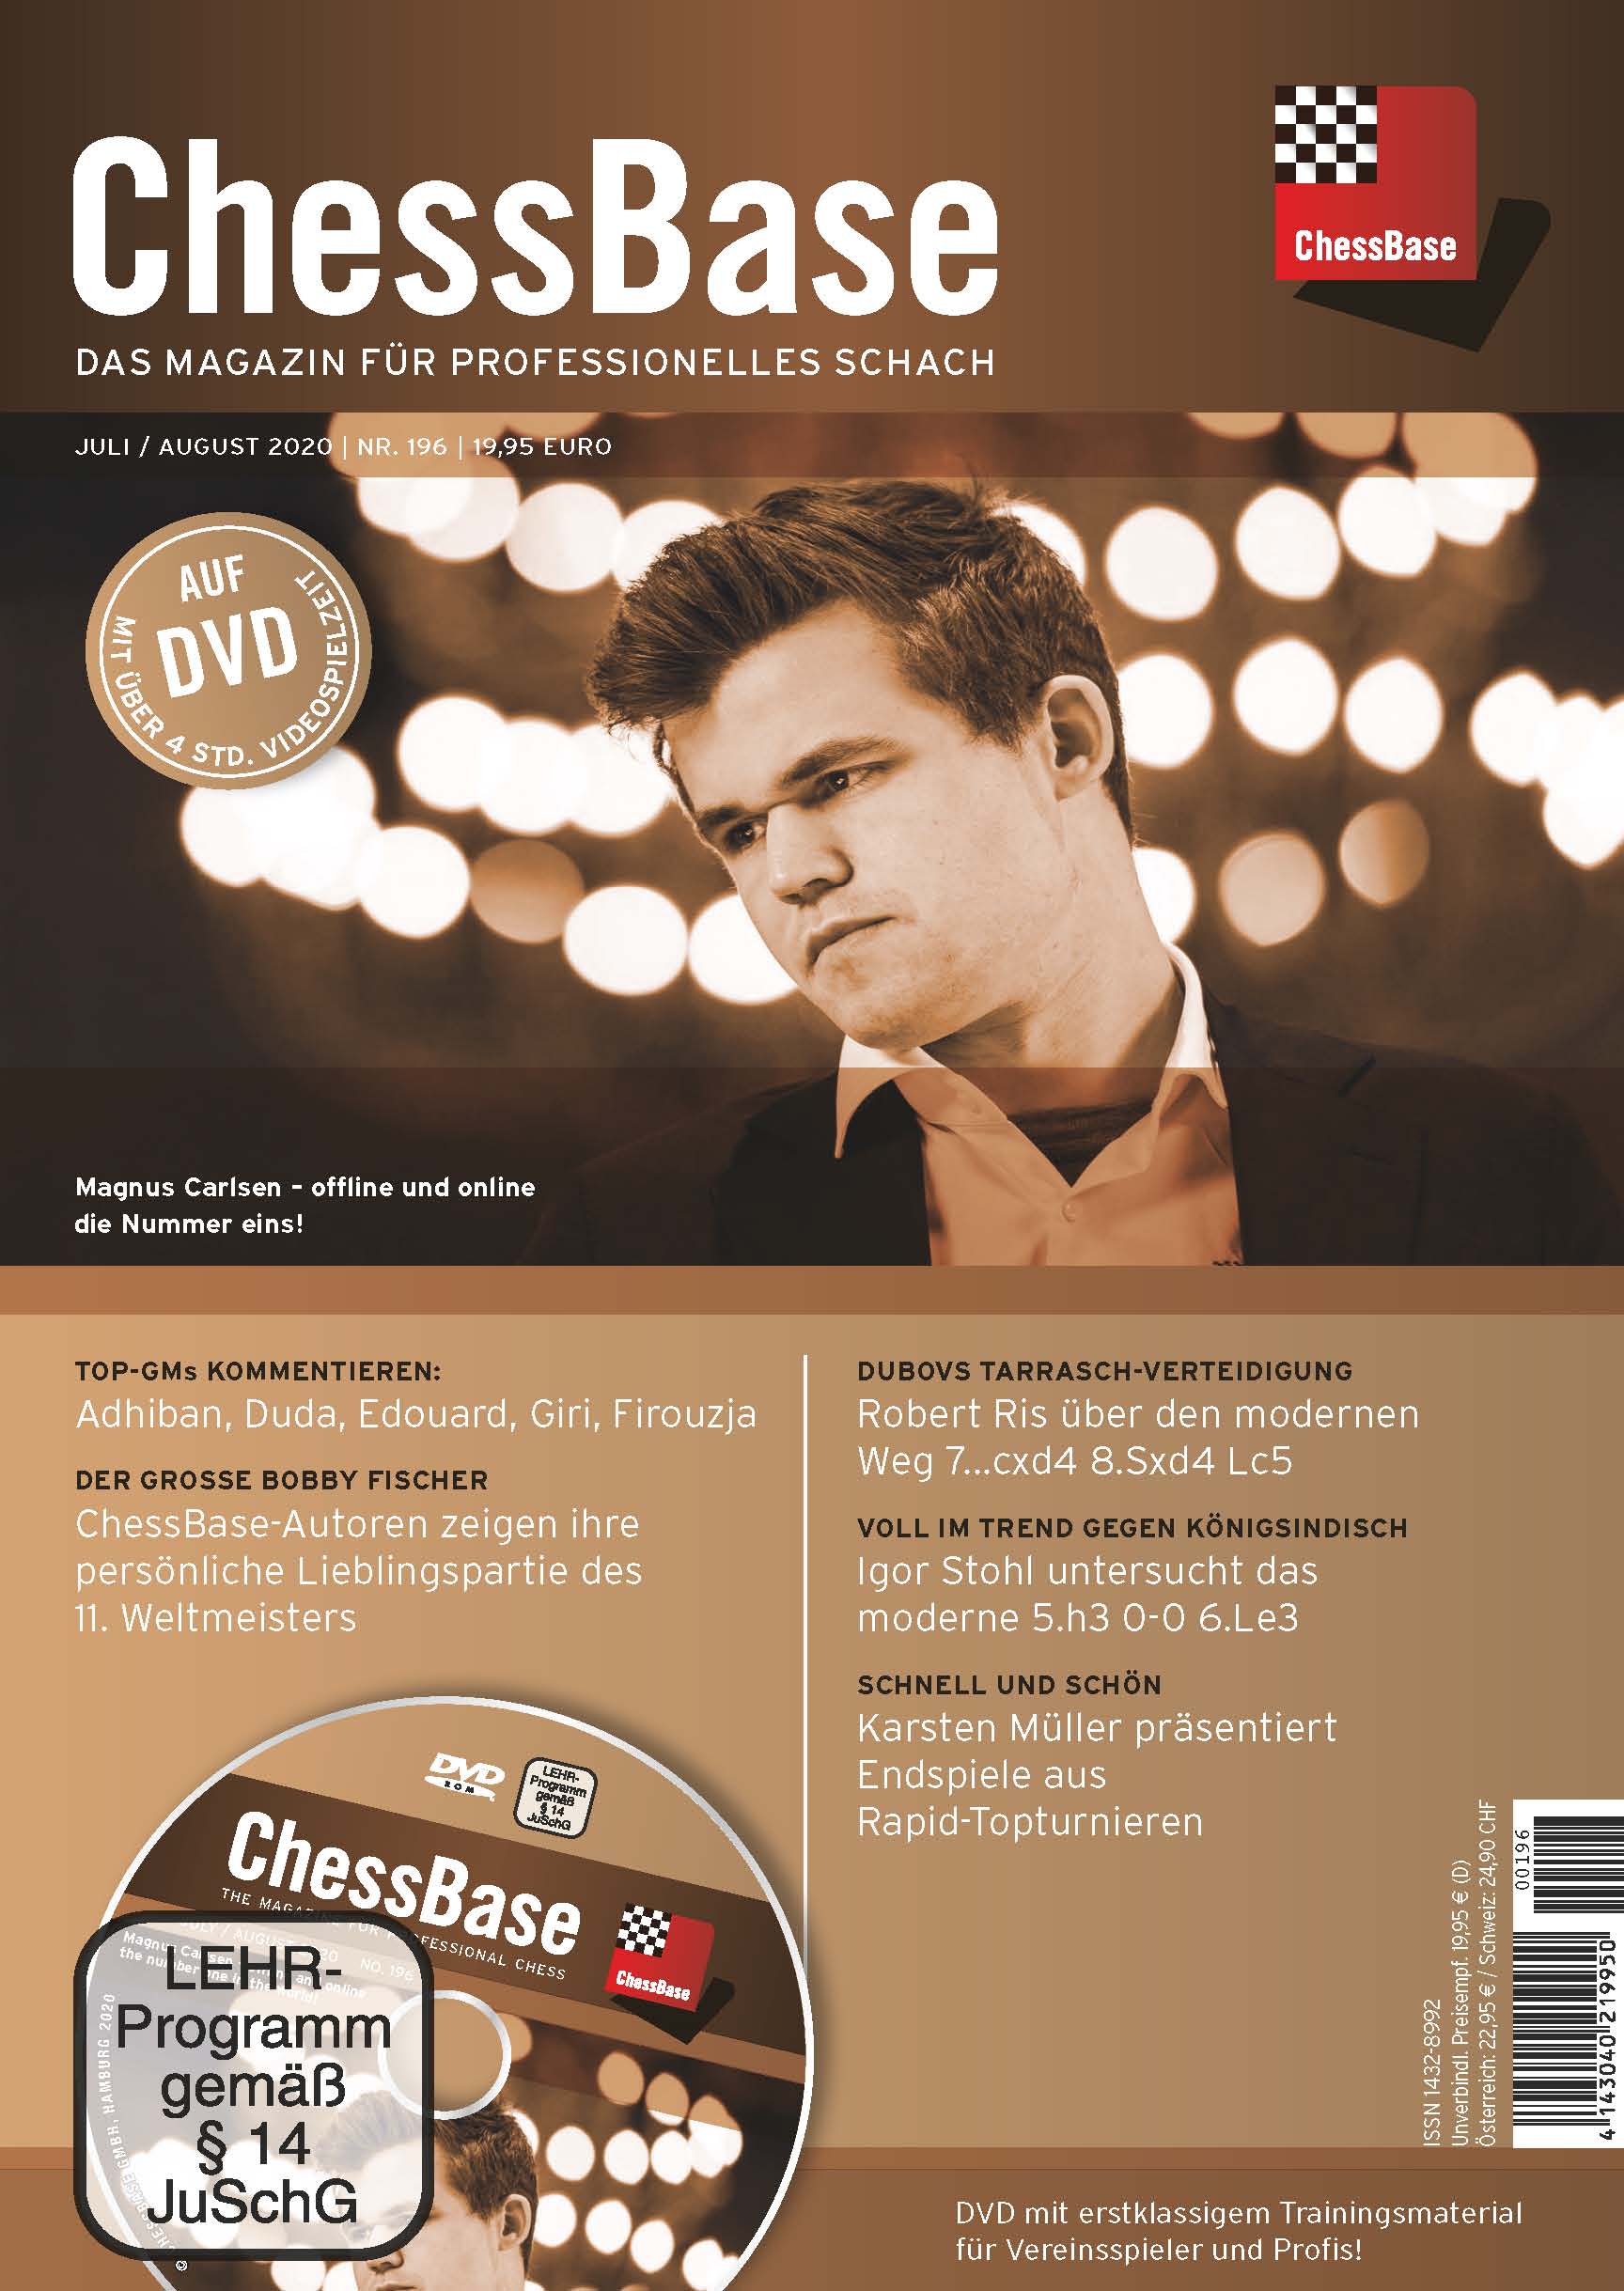 ChessBase Magazin 196